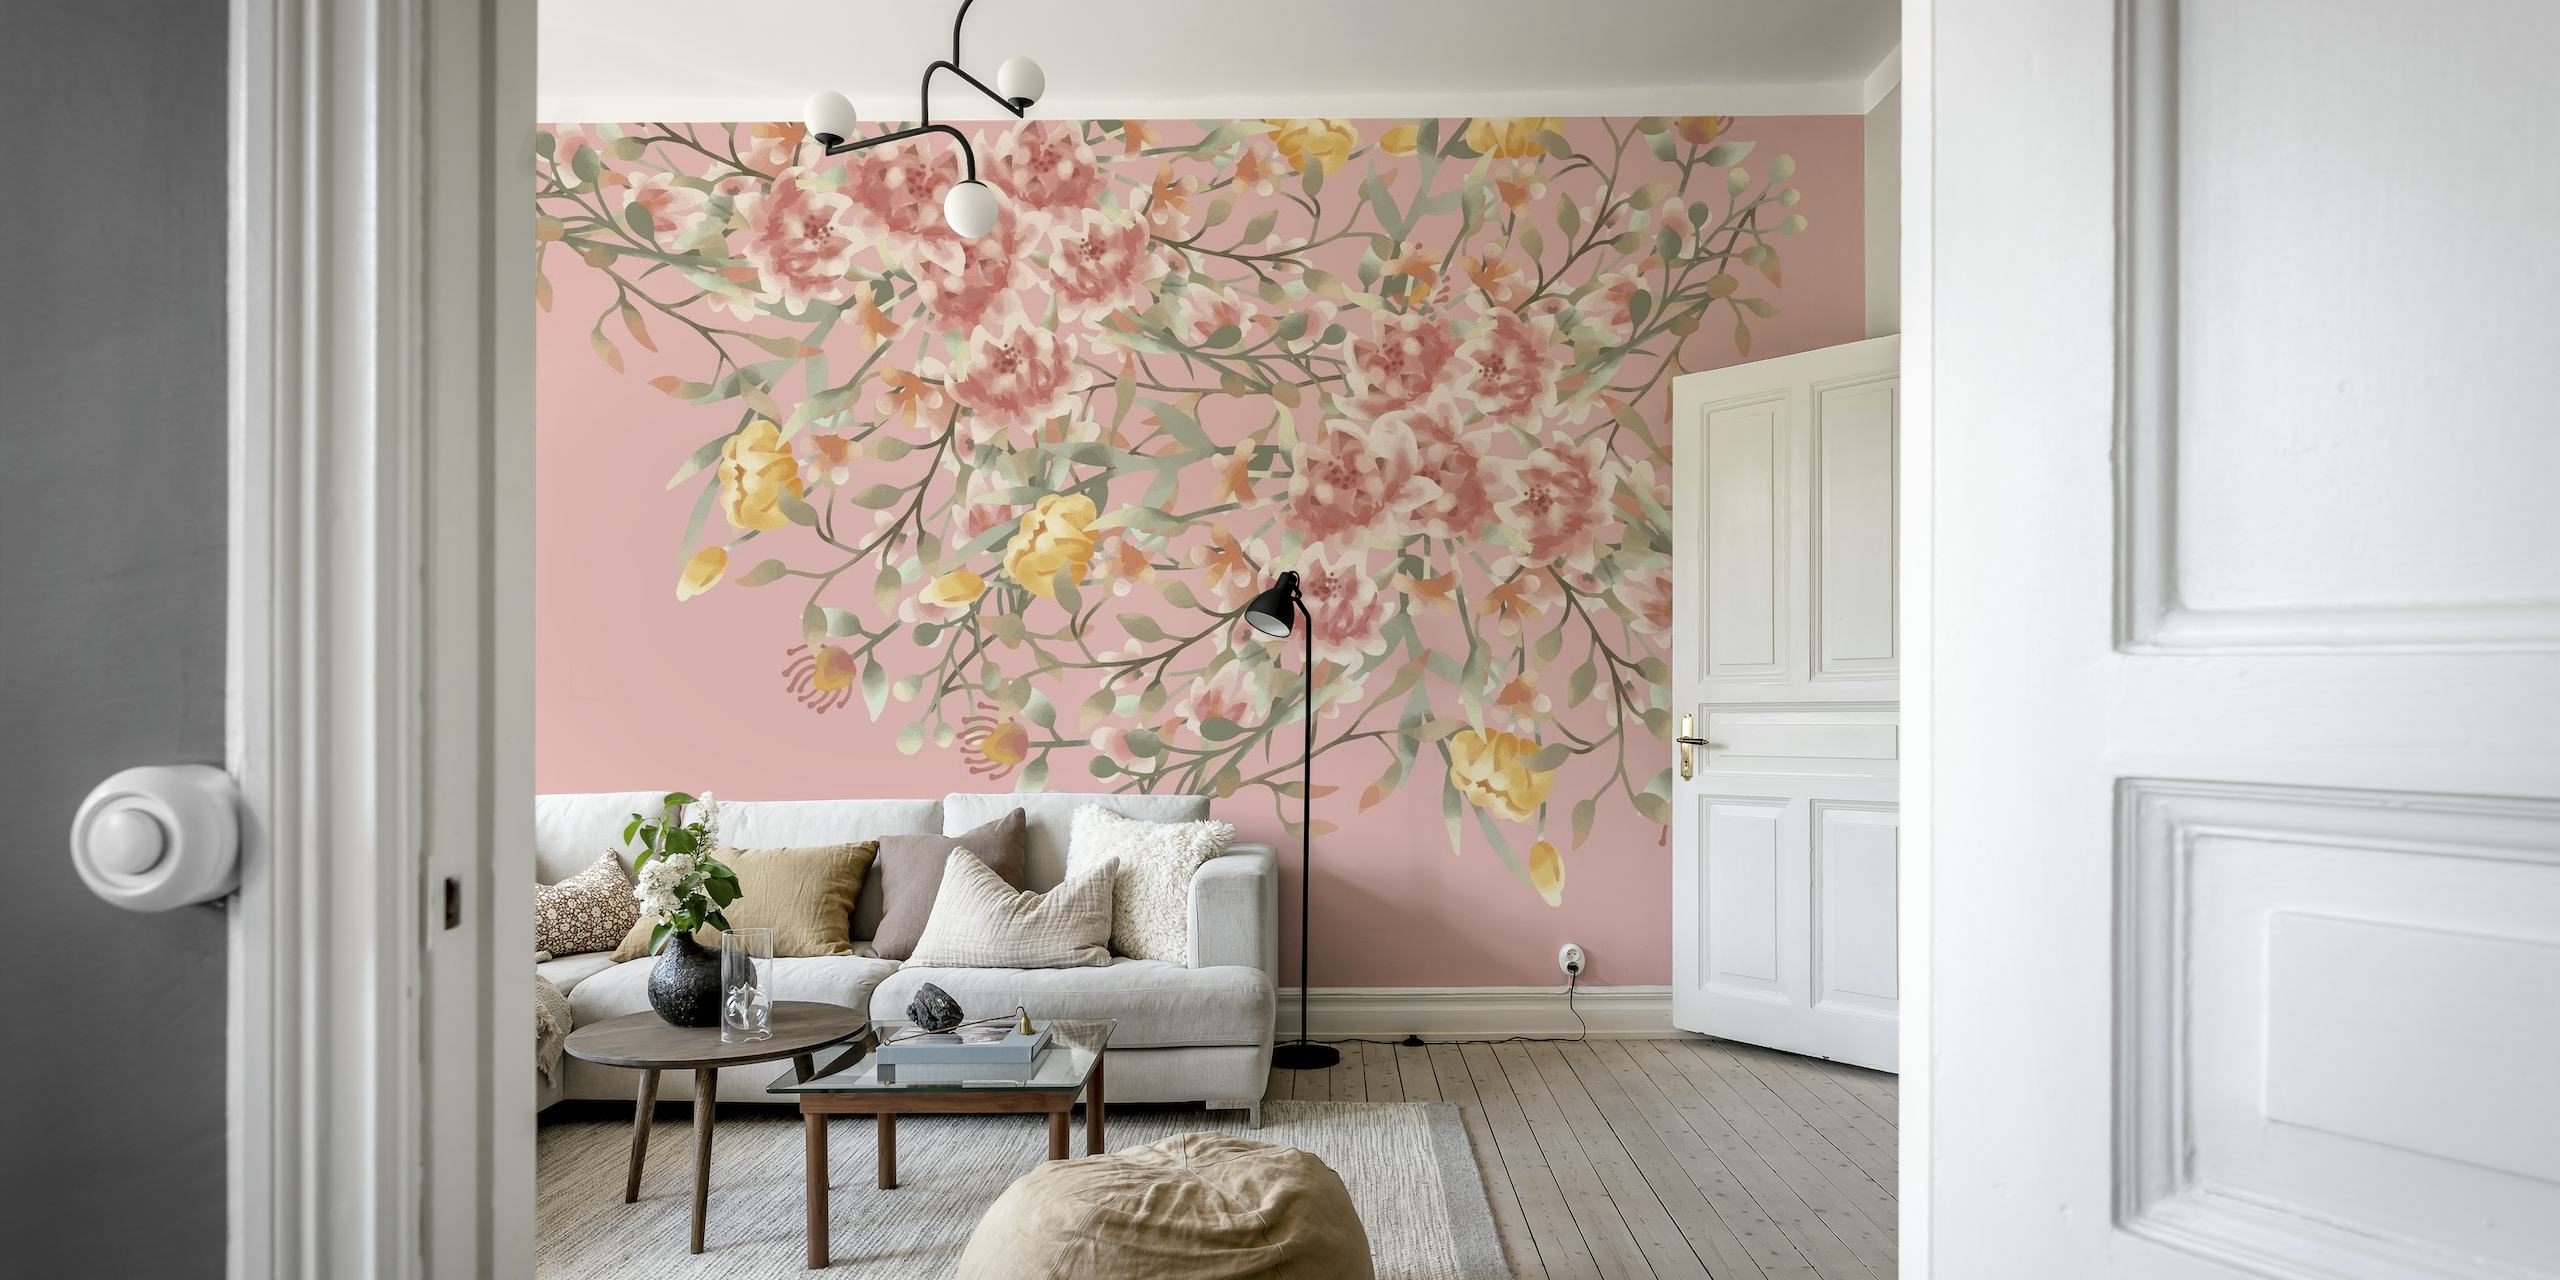 Flores silvestres em aquarela em tons suaves de rosa e terra em um mural de parede